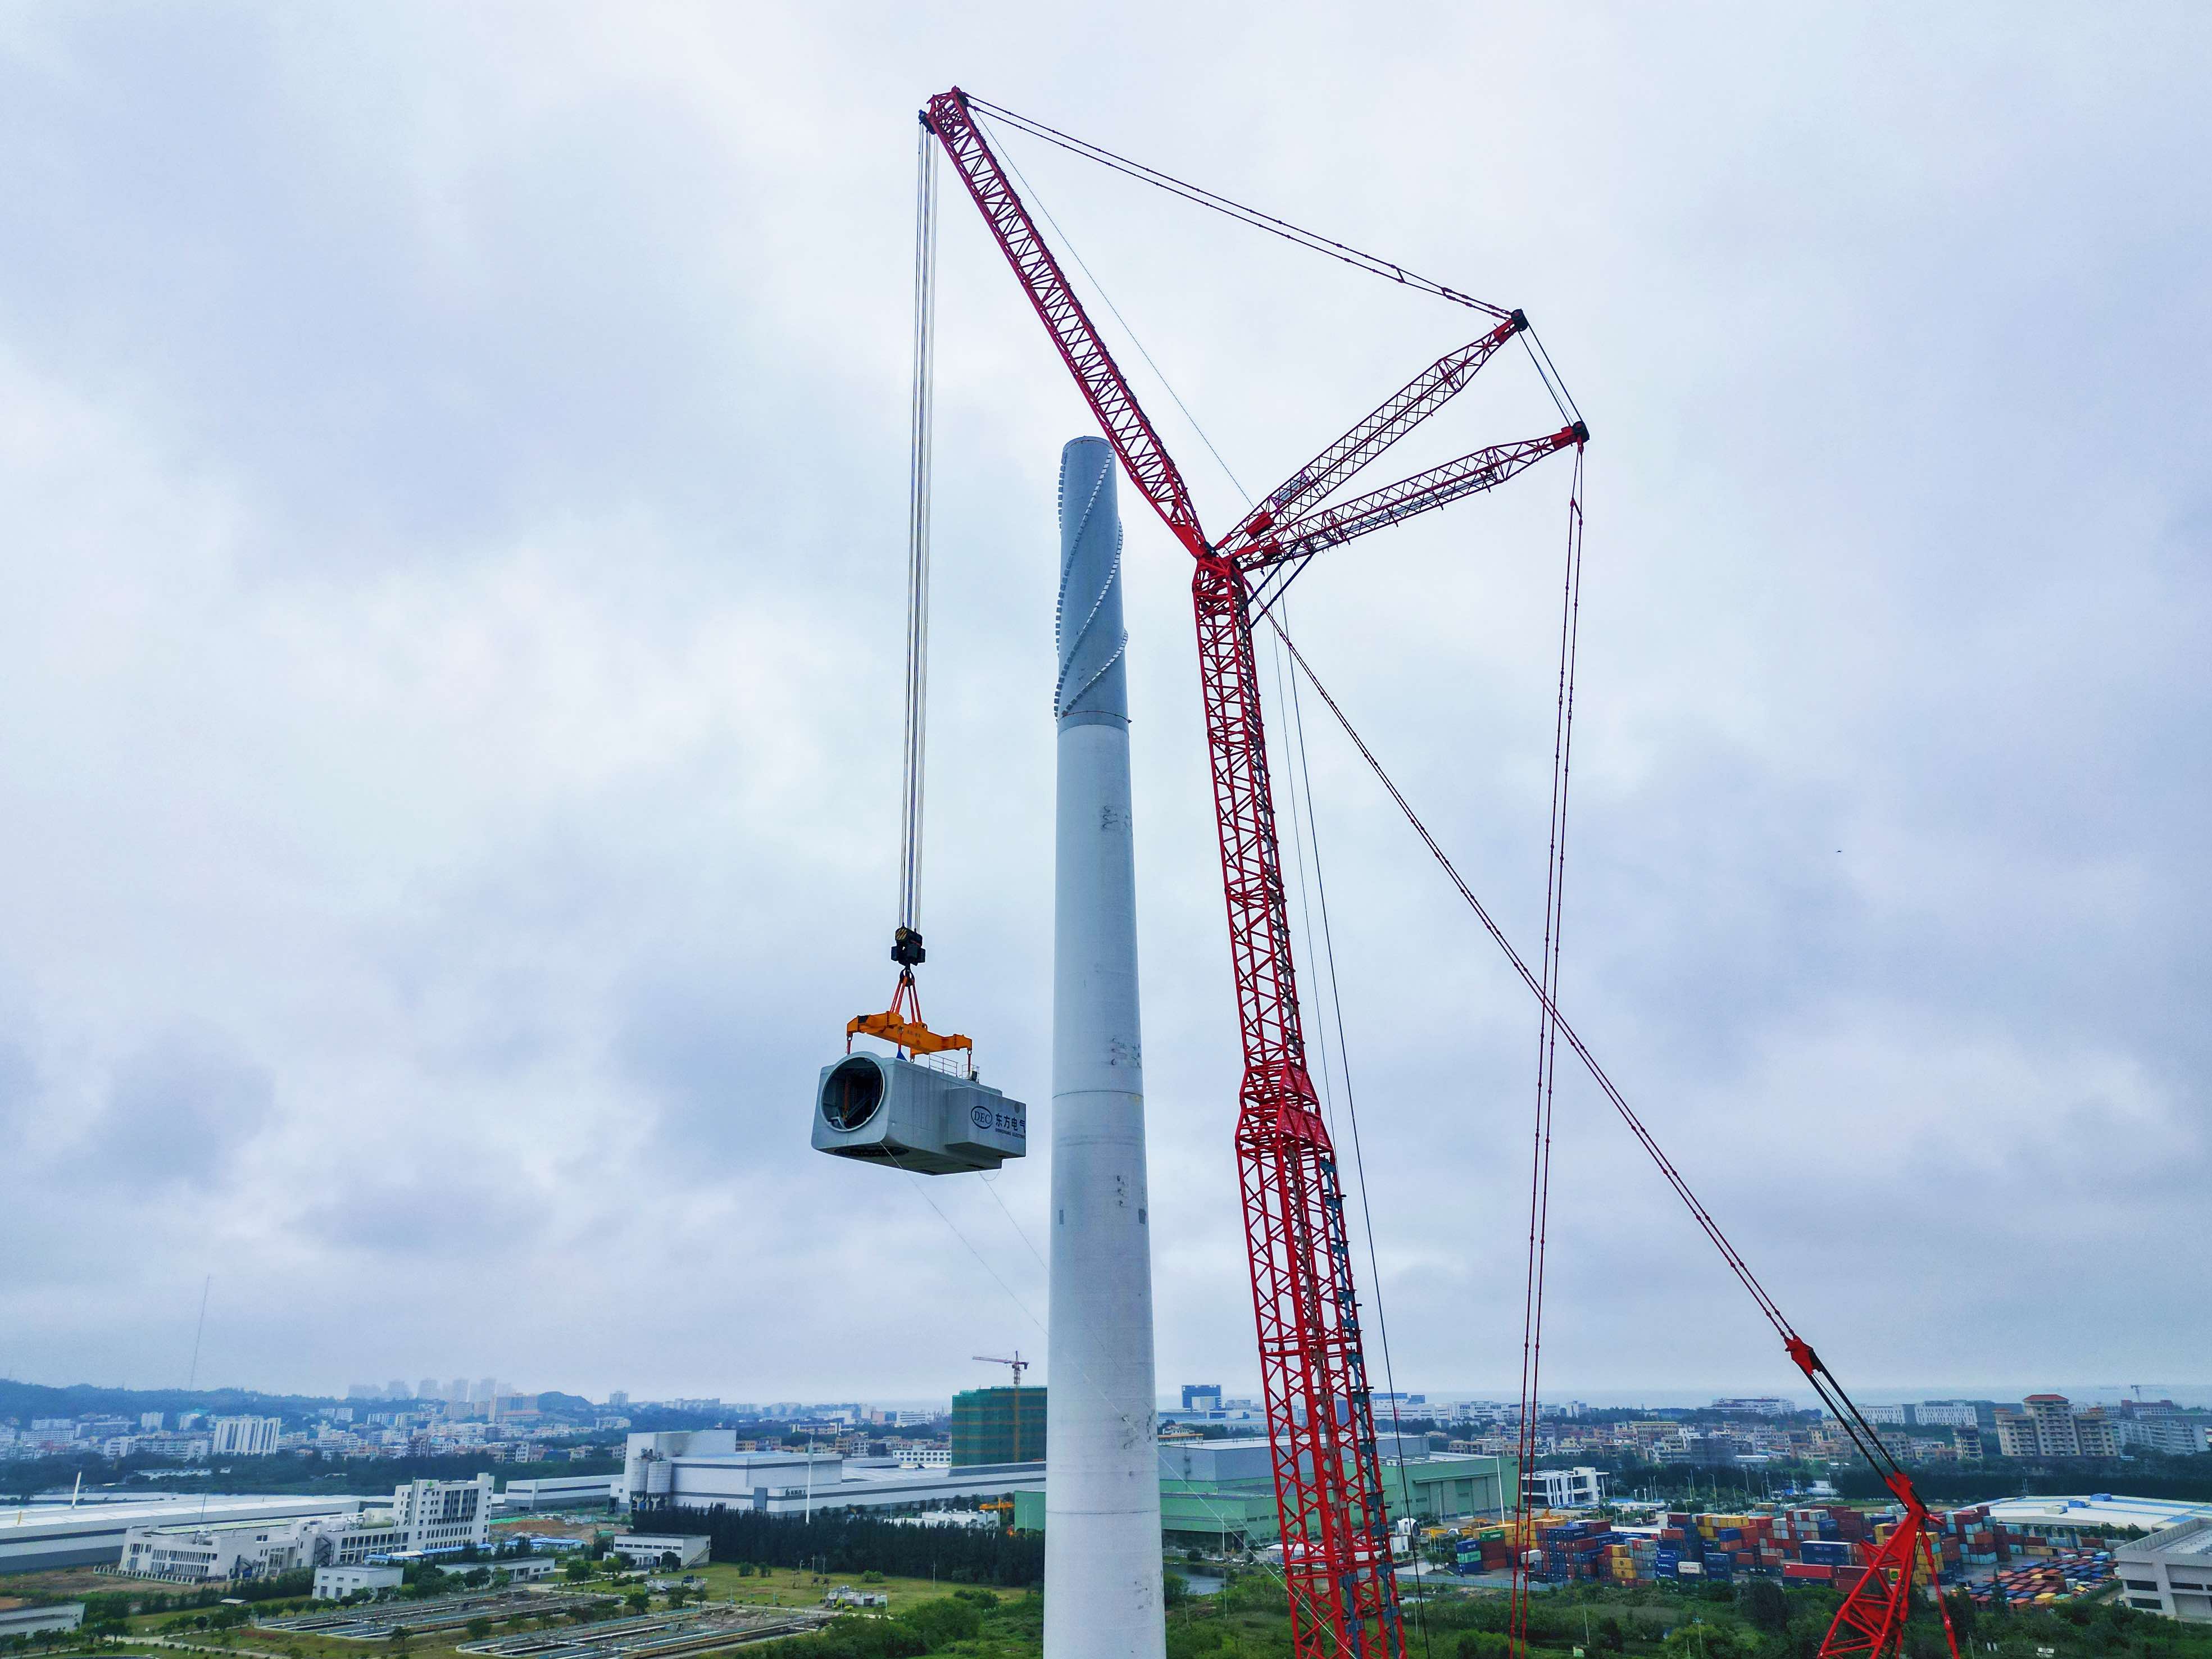 5月23日，目前全球已经开始安装的最大功率等级海上风电机组正在广东省临海试验基地进行吊装准备，图为大型起重装备正在吊装风机主机。潘军 摄